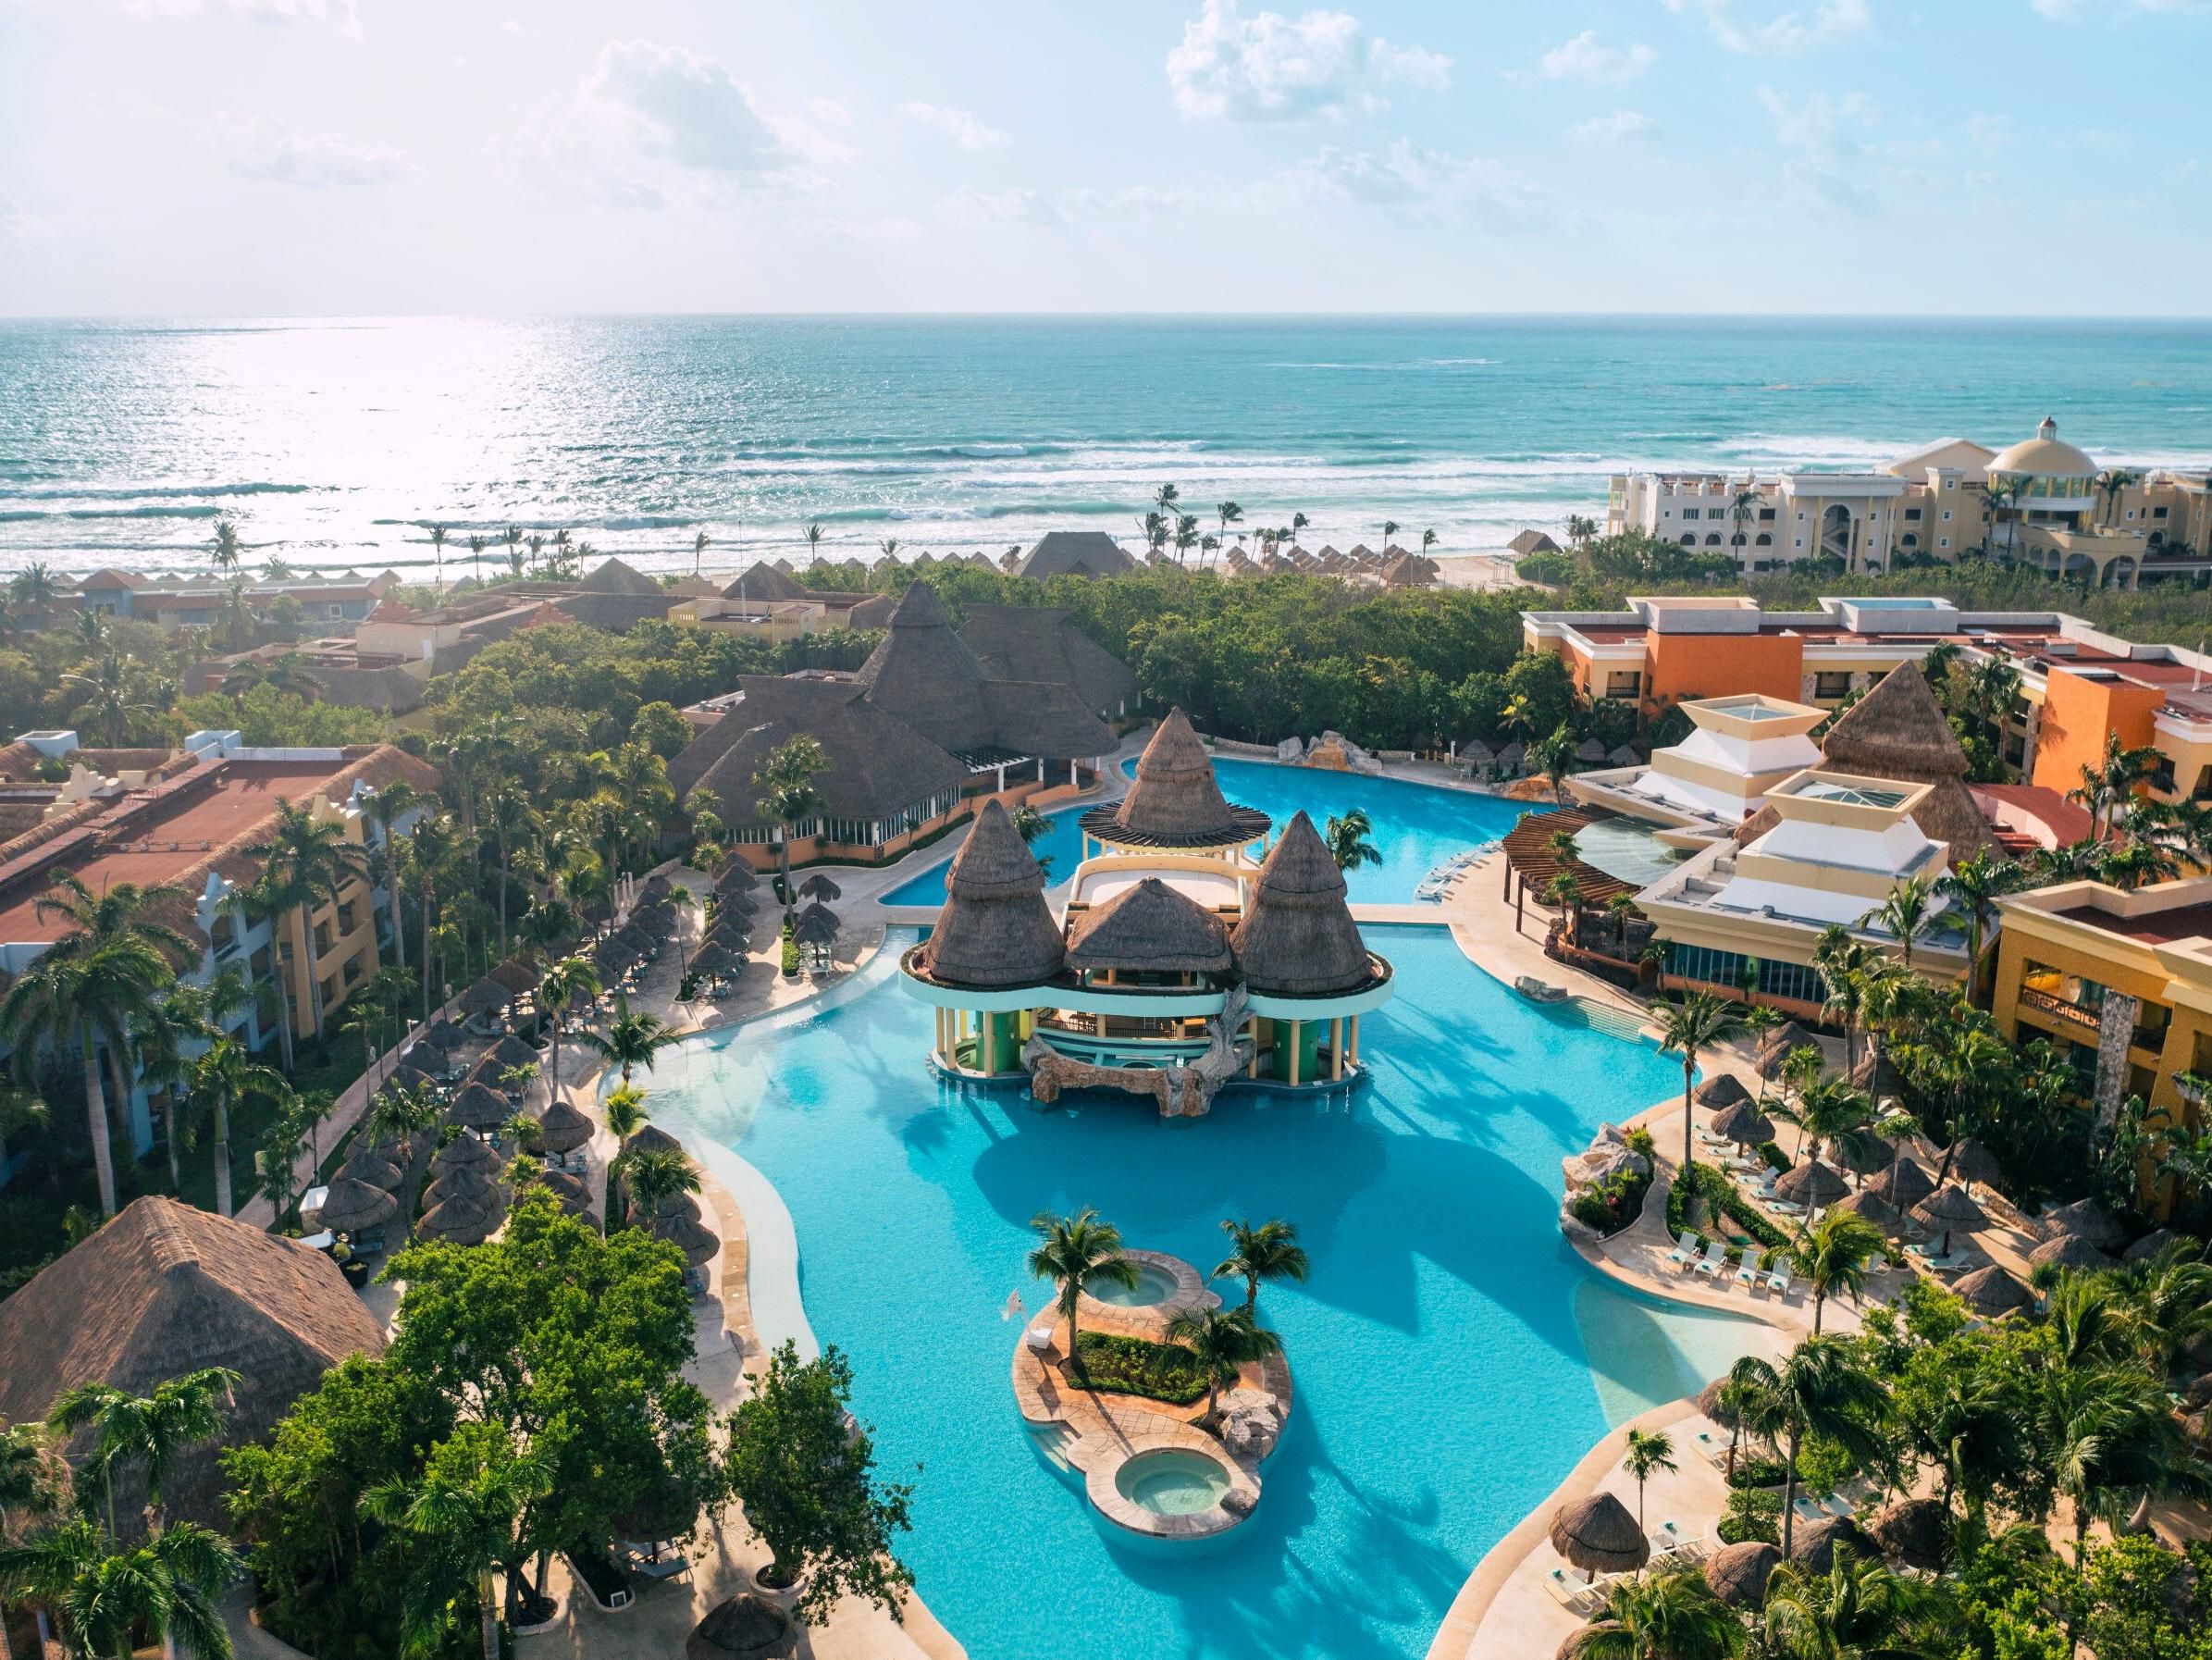 Playa Del Carmen Hotels | Top 12 Hotels in Playa Del Carmen, Mexico by IHG